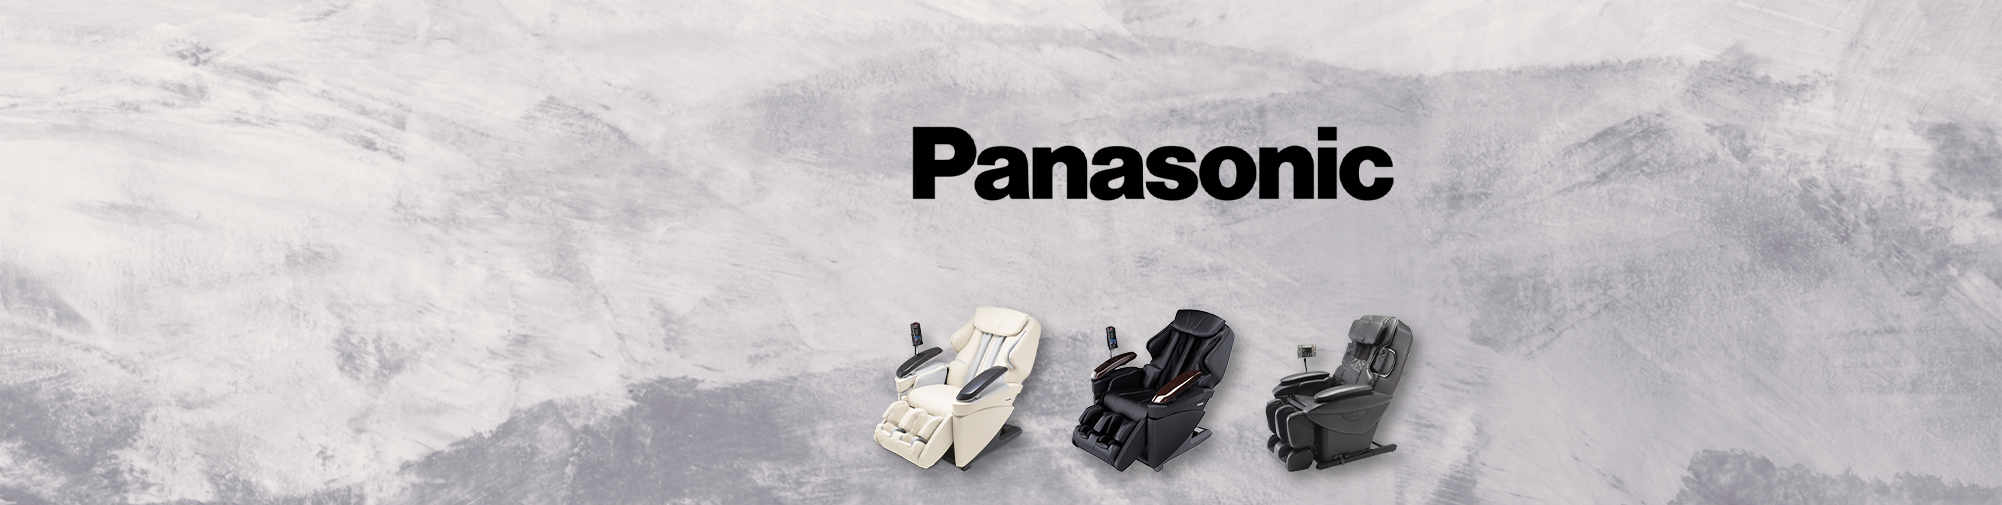 Panasonic Massagesessel-Massagesessel Welt